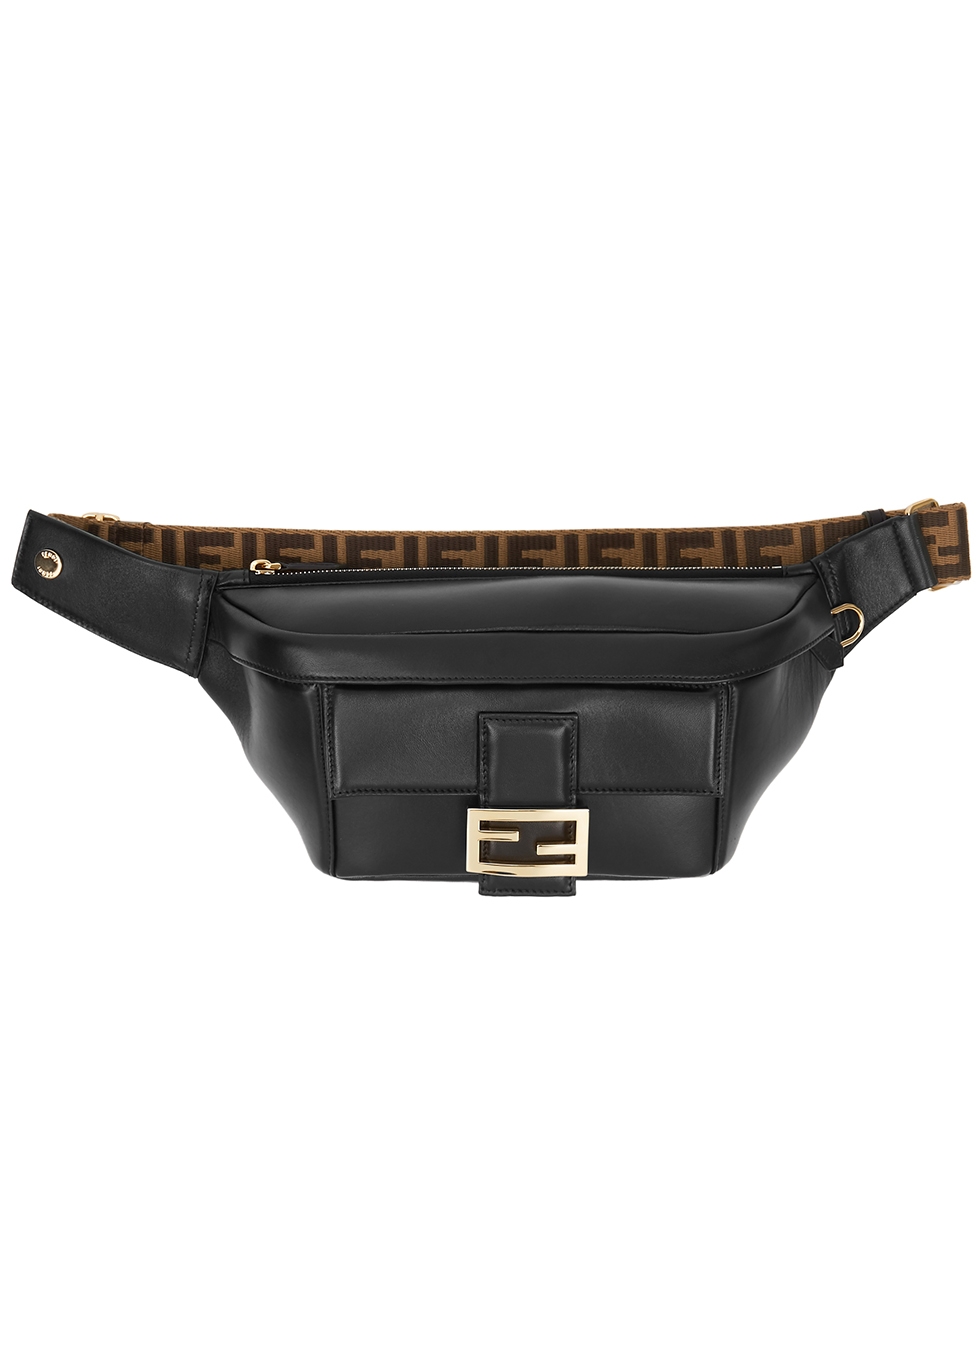 Fendi Baguette black leather belt bag 